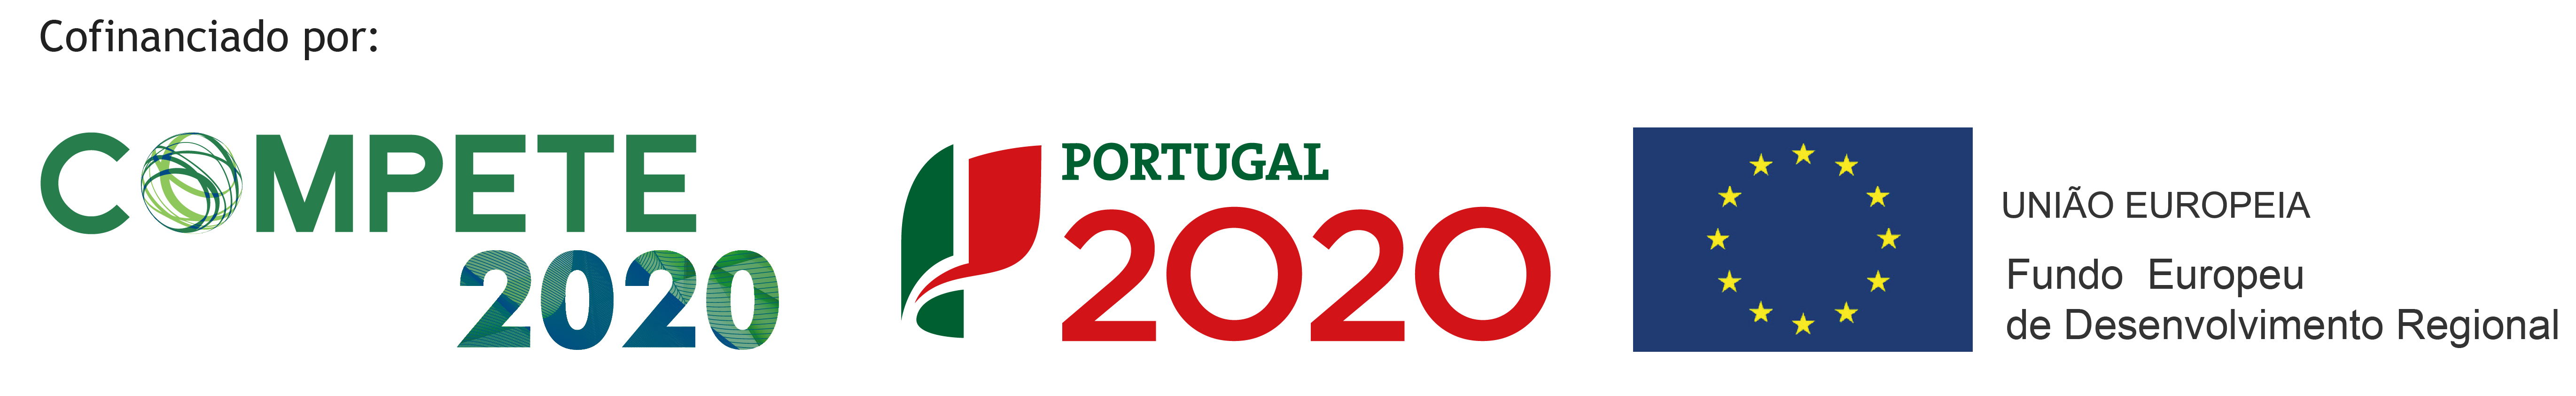 Portugal 2020 Logos